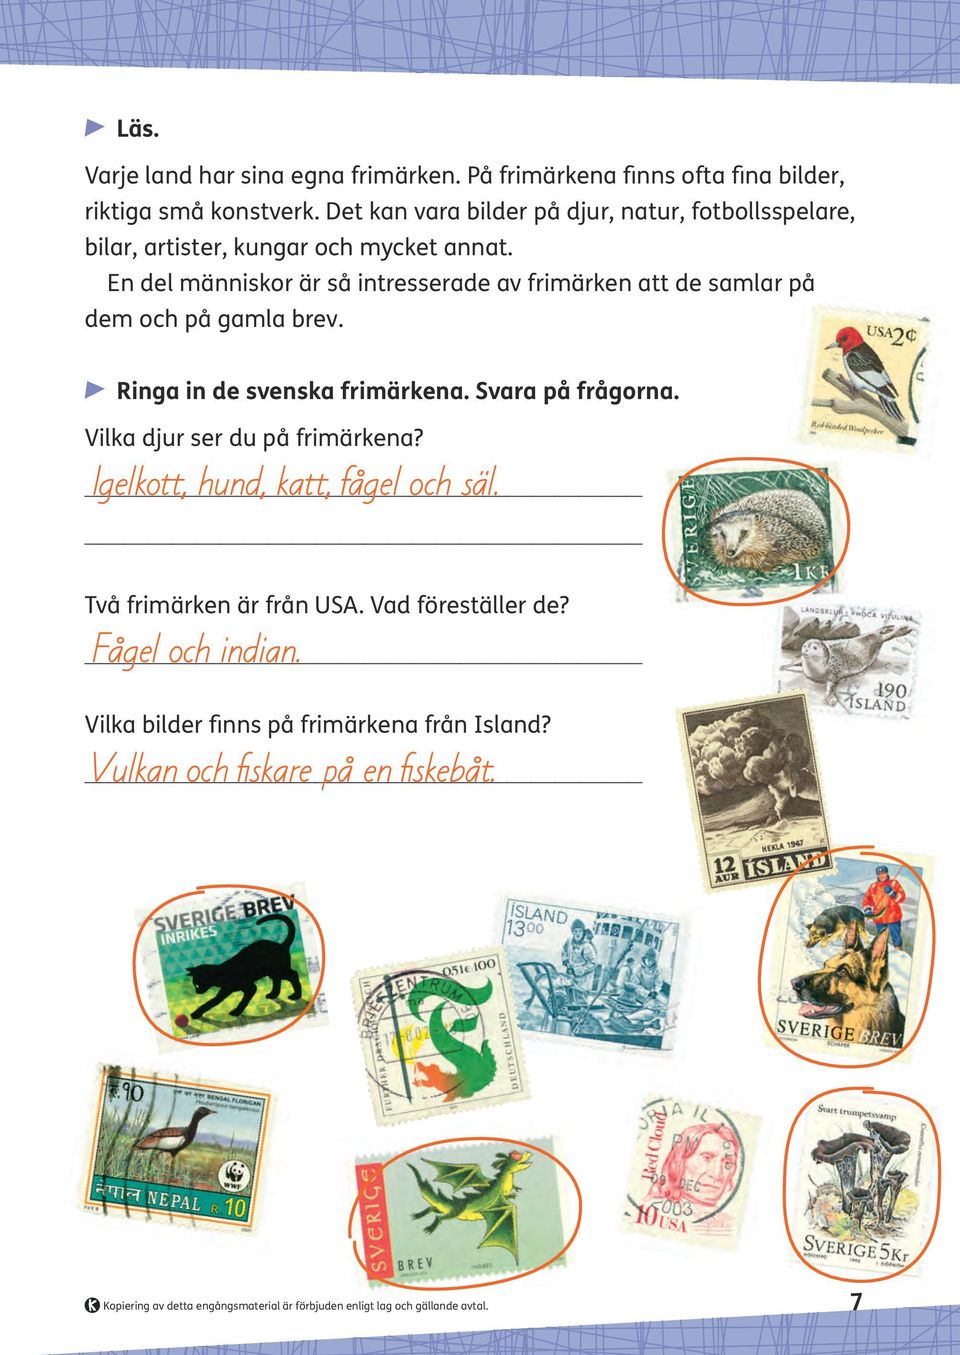 En del människor är så intresserade av frimärken att de samlar på dem och på gamla brev. Ringa in de svenska frimärkena. Svara på frågorna.